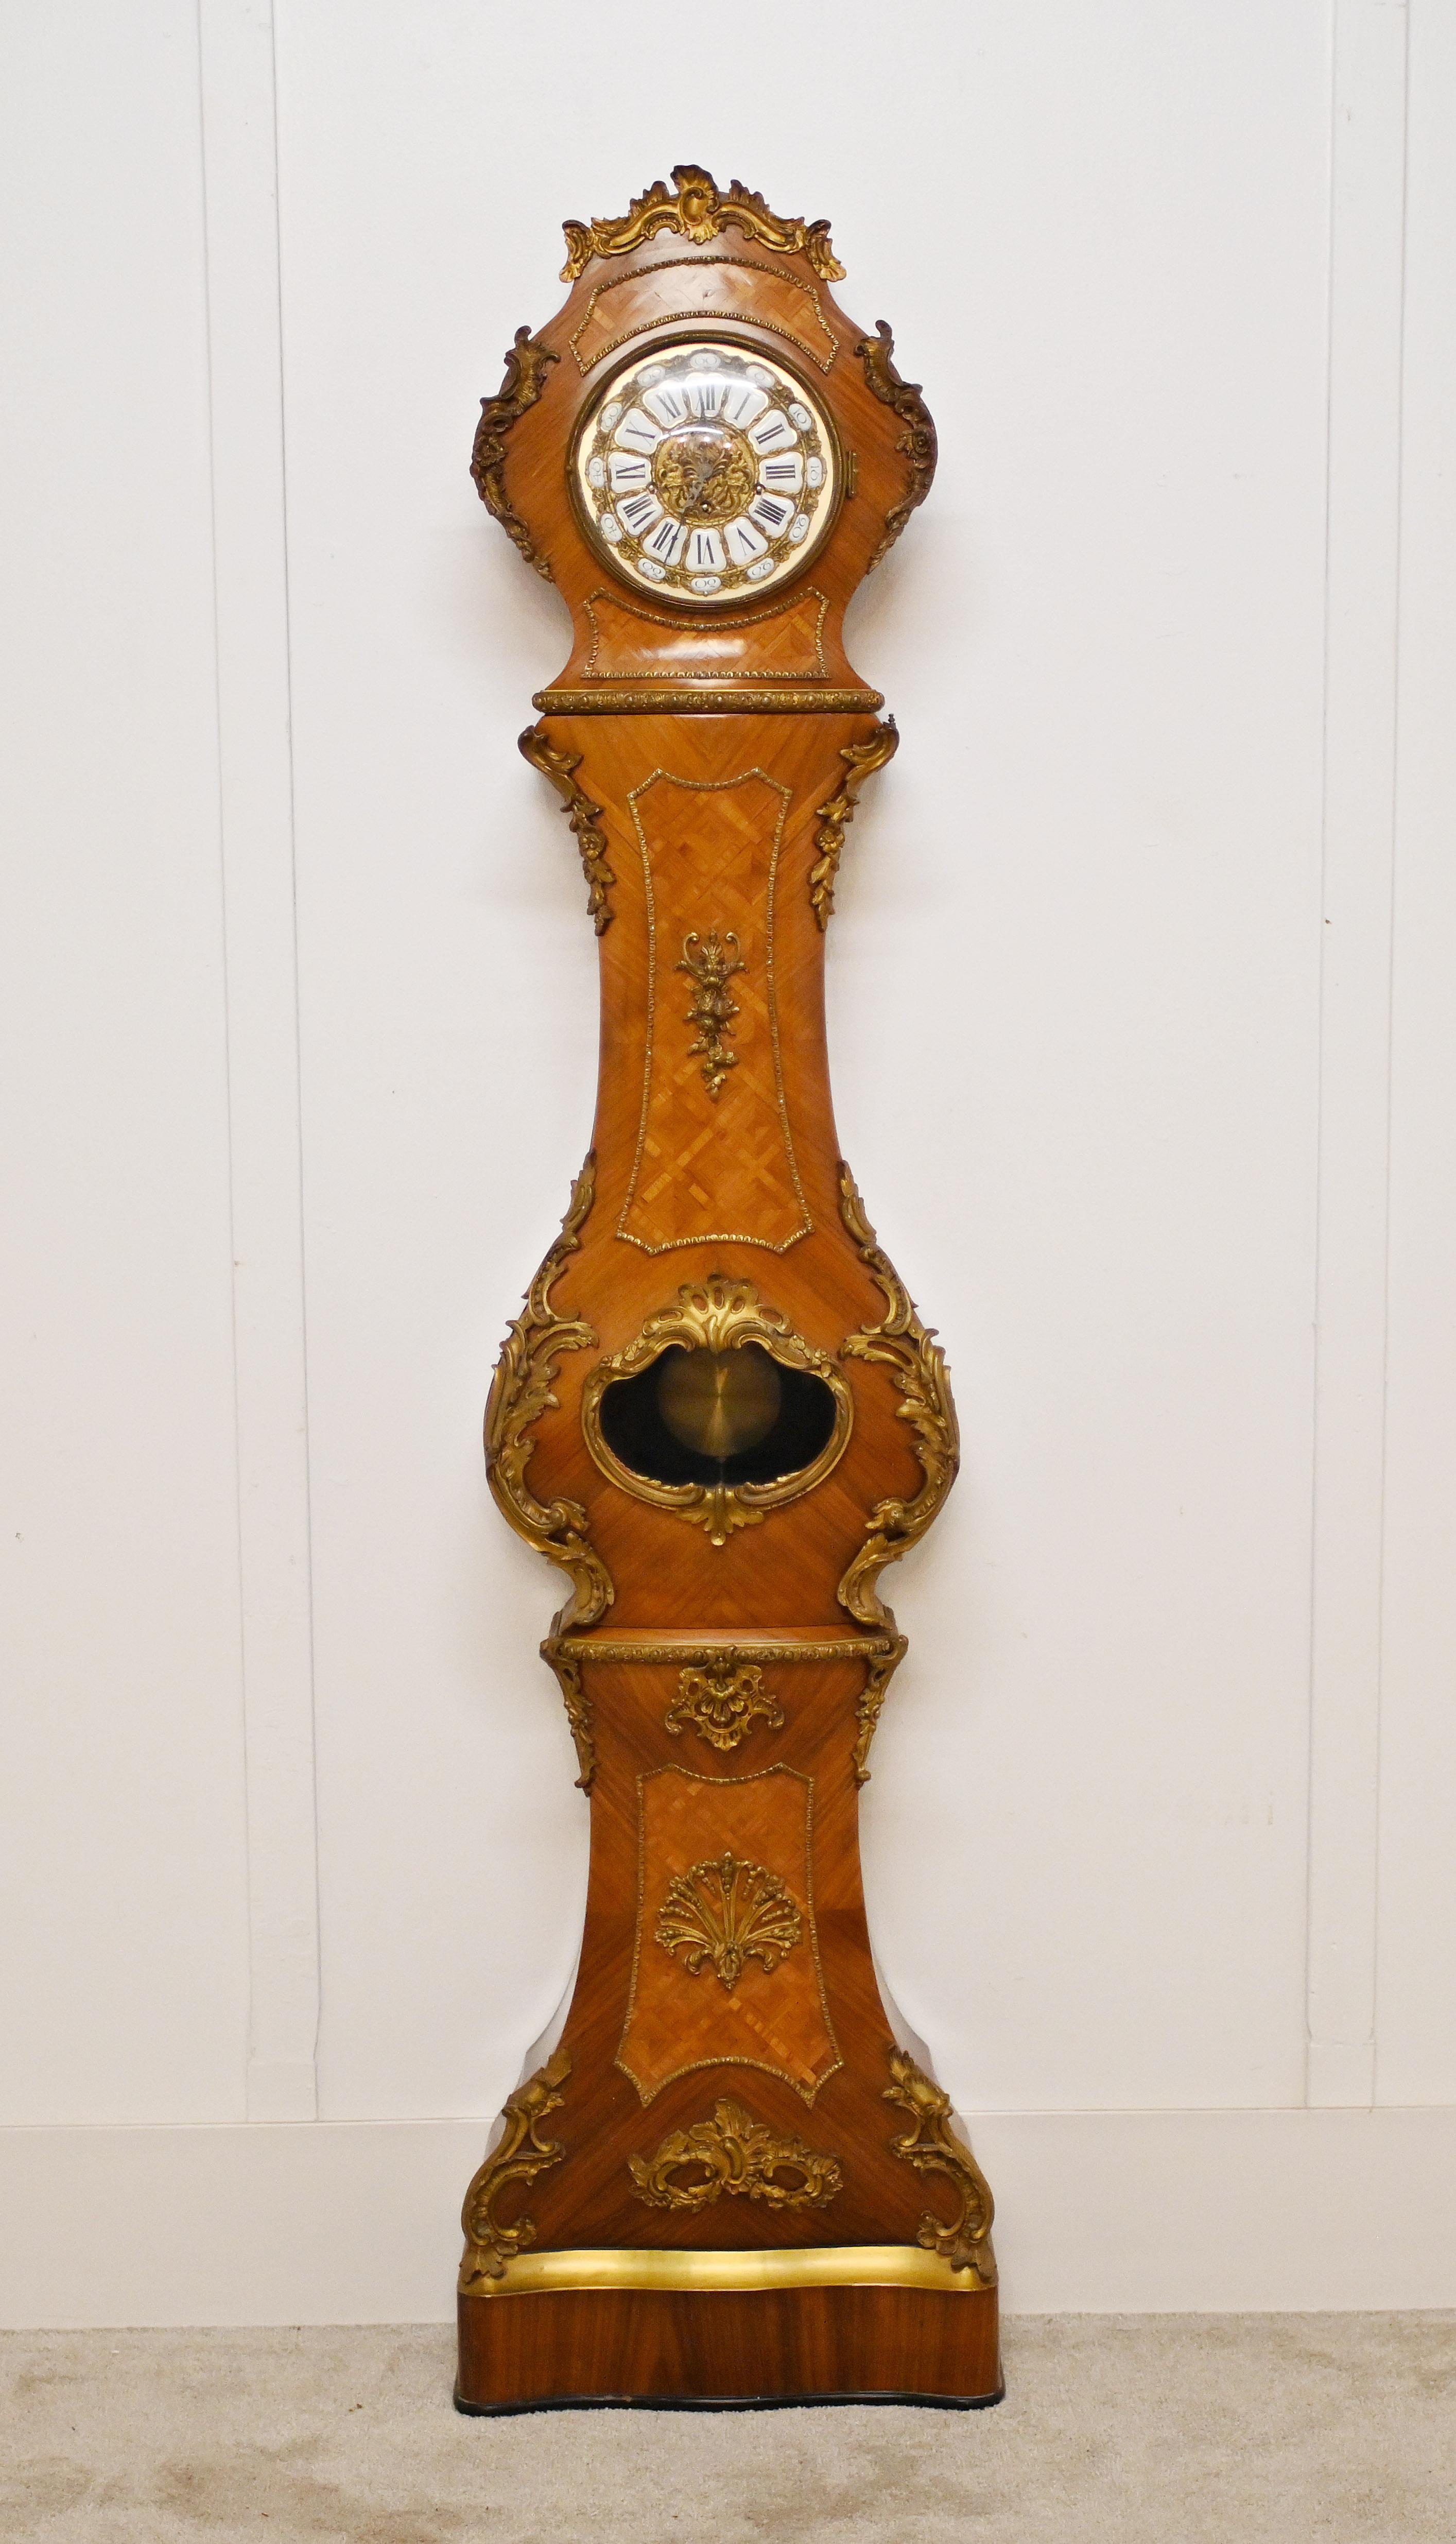 Eine prächtig geformte französische Kamin-Großvateruhr aus Königsholz  
Mit Intarsien und Ormolu-Beschlägen bester Qualität 
Die Uhr ist voll funktionsfähig
Um 1930
Gekauft bei einem Händler in der Rue Daphin auf den Pariser Antiquitätenmärkten
Wird